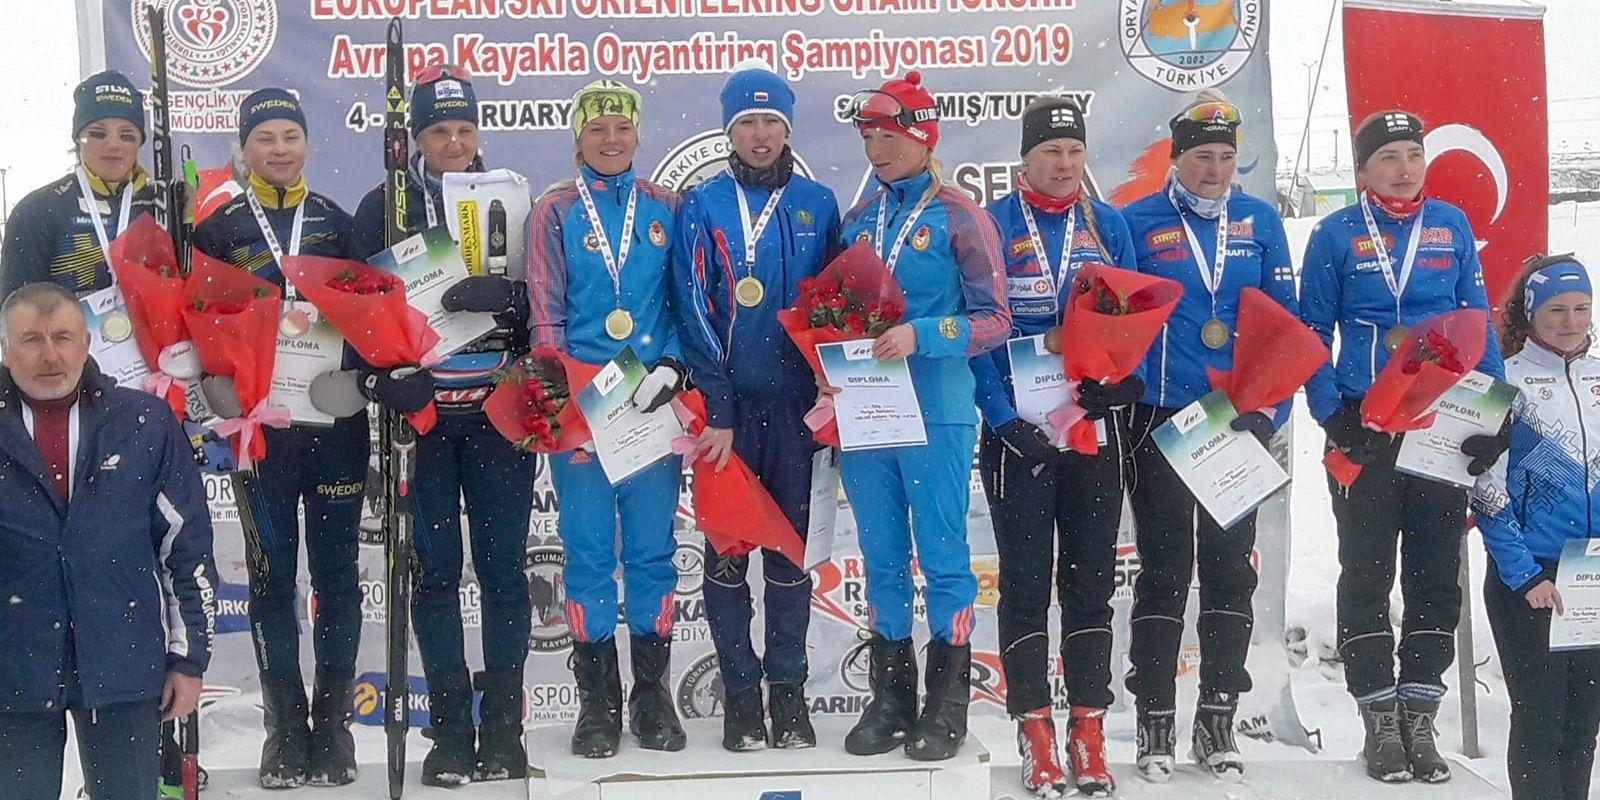 Sveriges stafettdamer ordnade silver och herrarna brons när EM i skidorientering avslutades.